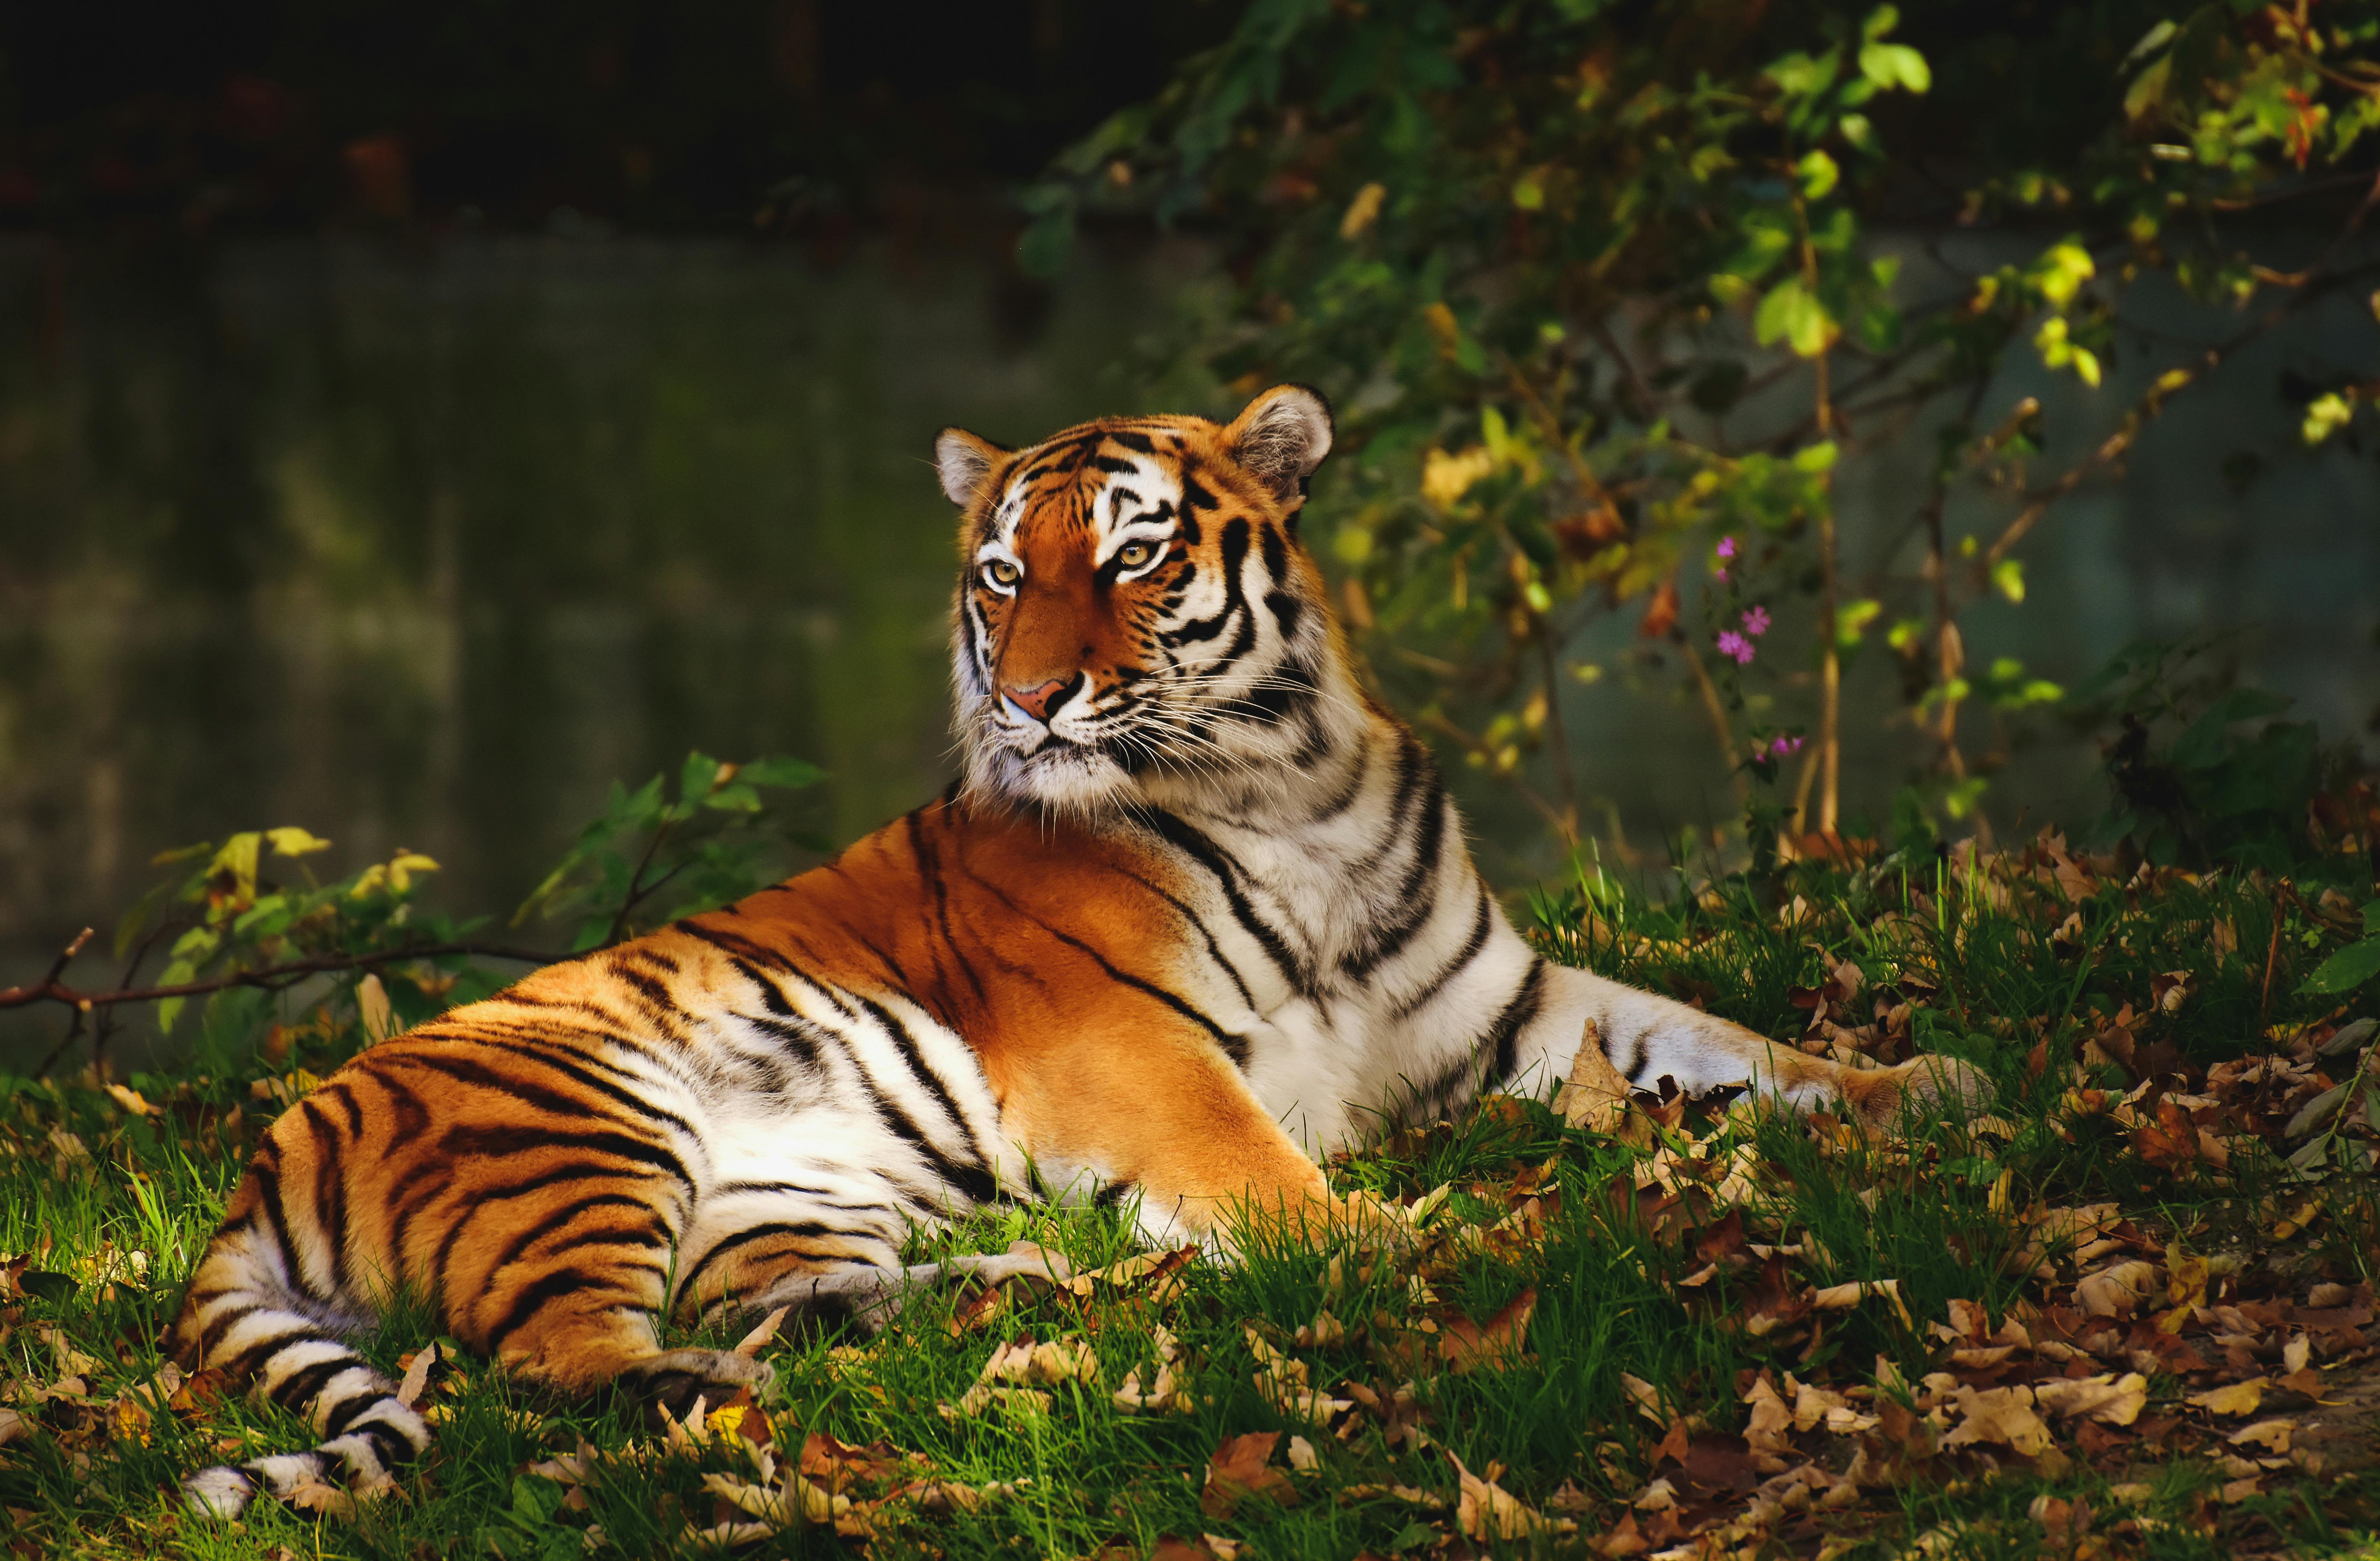 Animal Tiger 4k Ultra HD Wallpaper